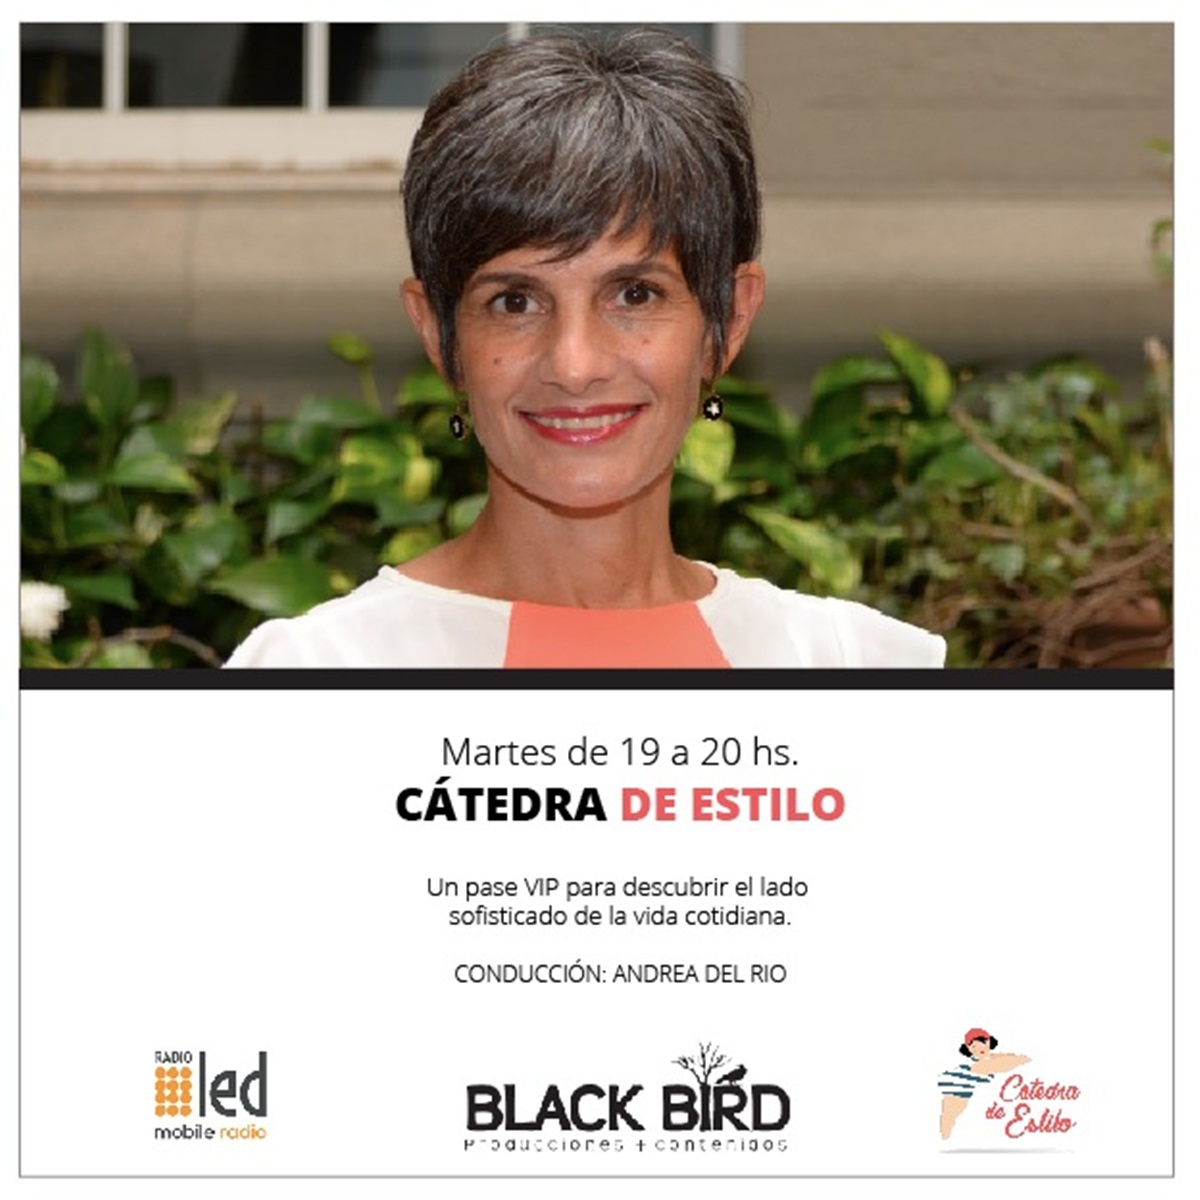 #Podcast Cátedra de Estilo | 05.06: Carolina Gaitán Montoya @LCortesana #microemprendedores #moda